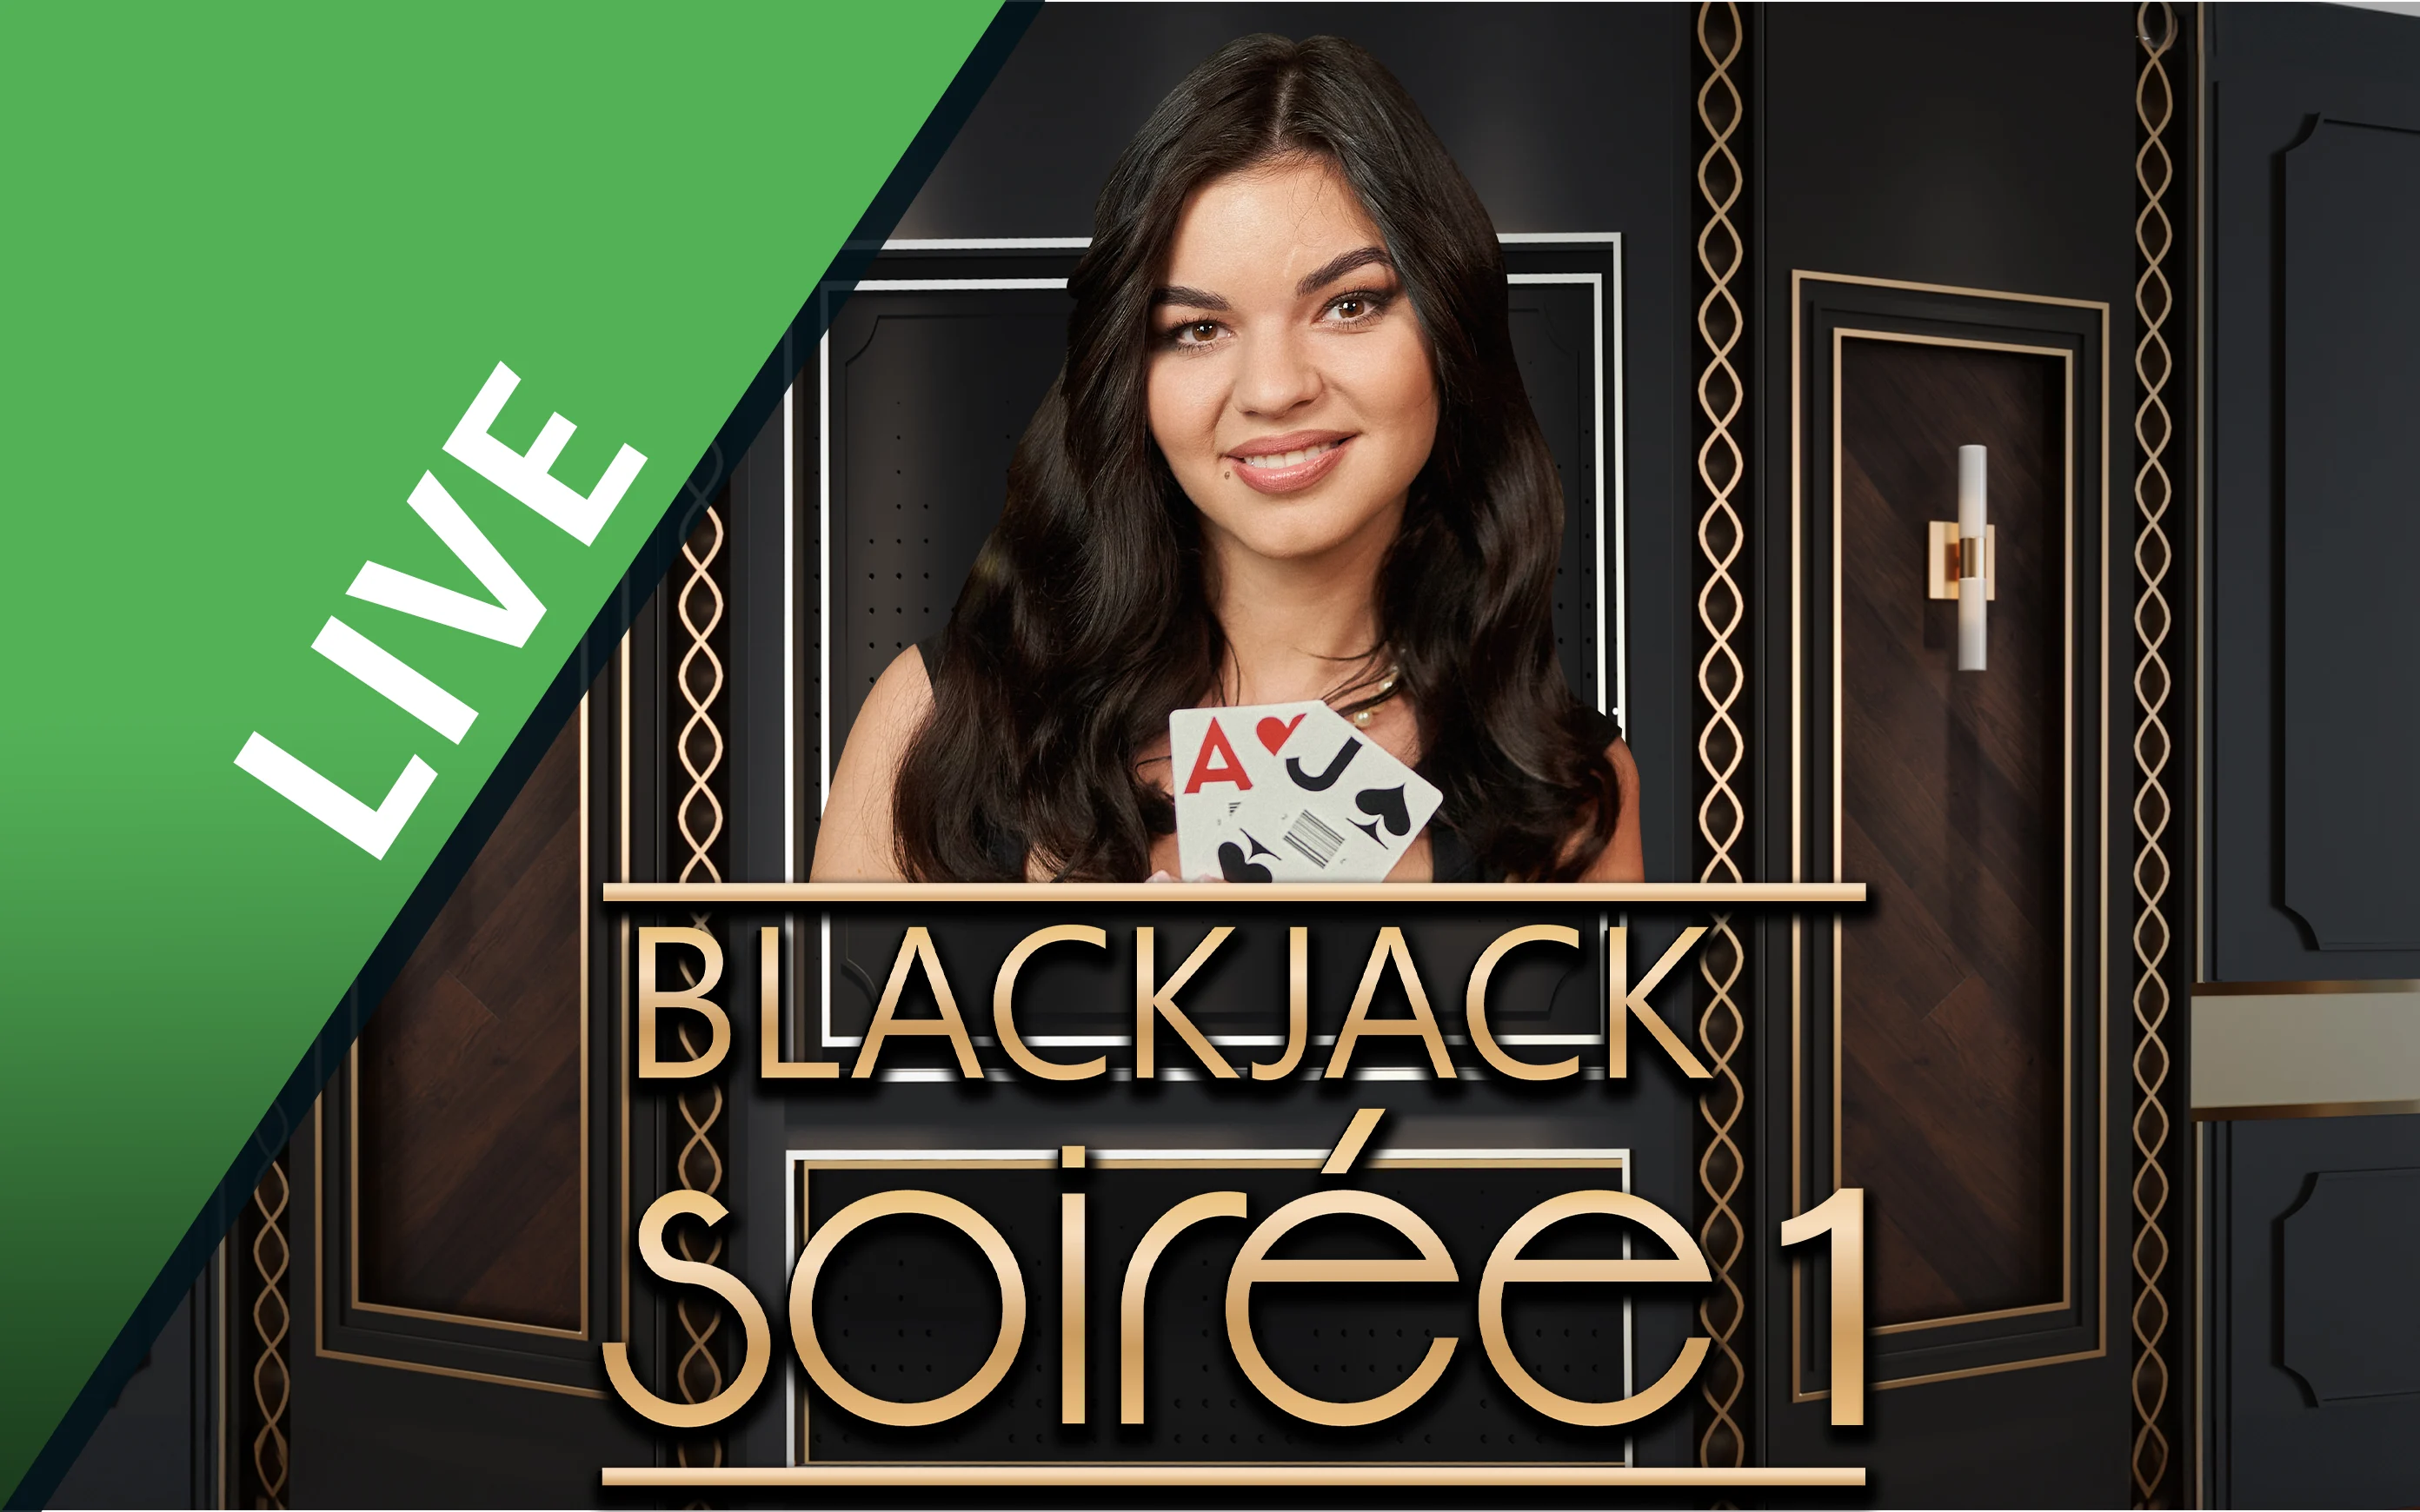 Luaj Blackjack Soirée 1 në kazino Starcasino.be në internet